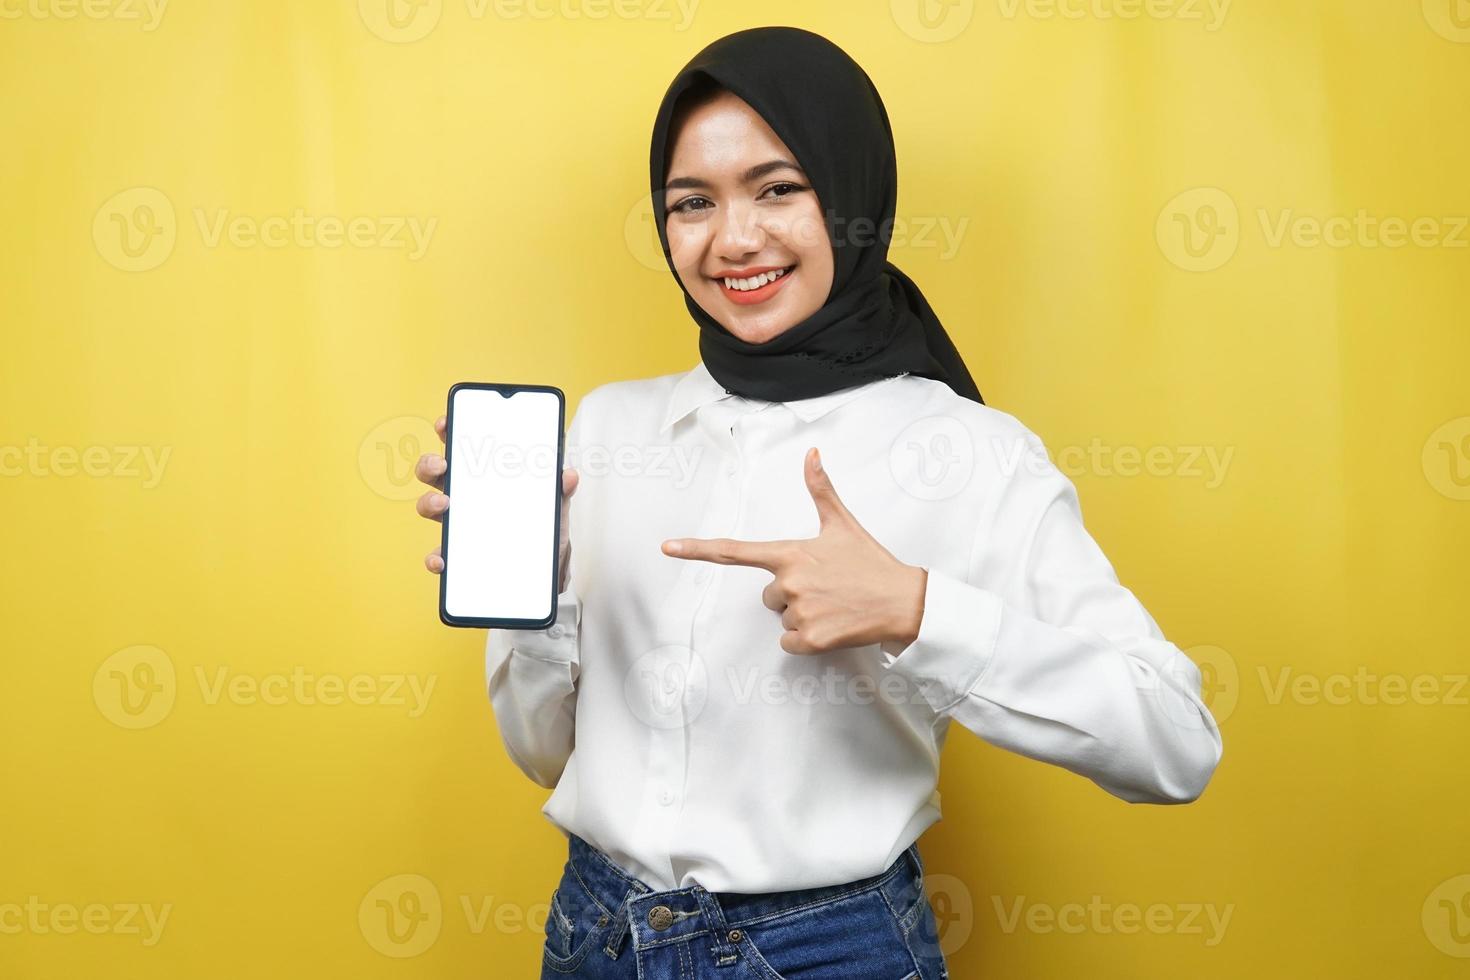 belle jeune femme musulmane asiatique souriante confiante, enthousiaste et joyeuse avec la main pointant sur le smartphone, faisant la promotion de quelque chose, faisant la promotion de l'application, isolée sur fond jaune photo